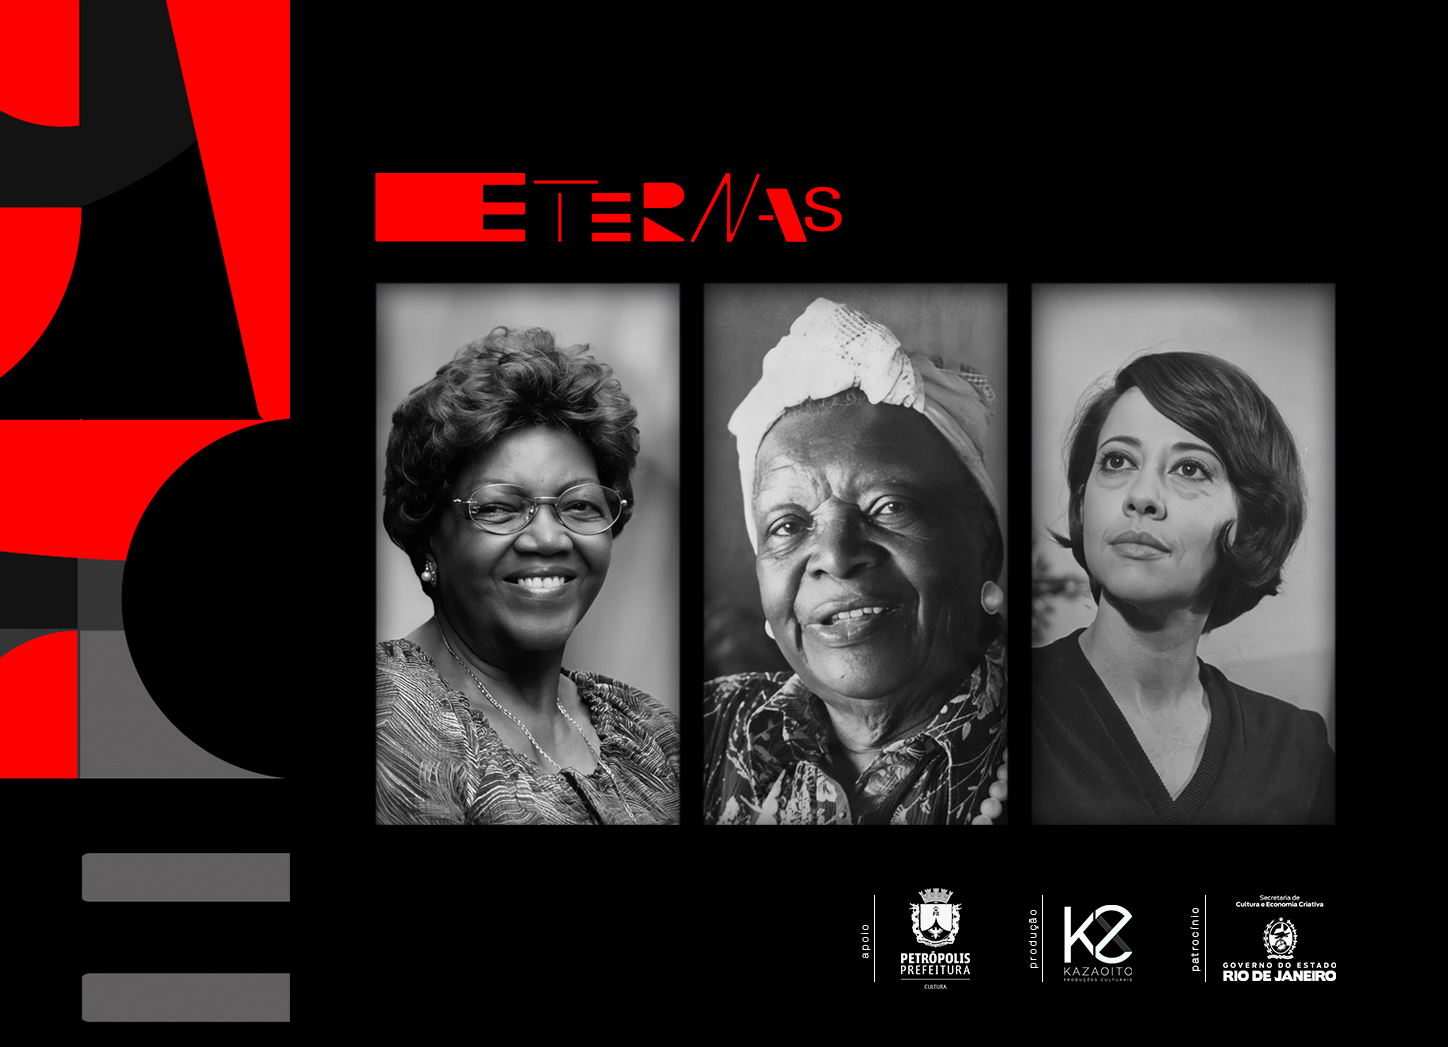 No mês das Mulheres Kaza8 lança o podcast “Eternas” – um tributo a mulheres brasileiras que revolucionaram o país através da expressão artística